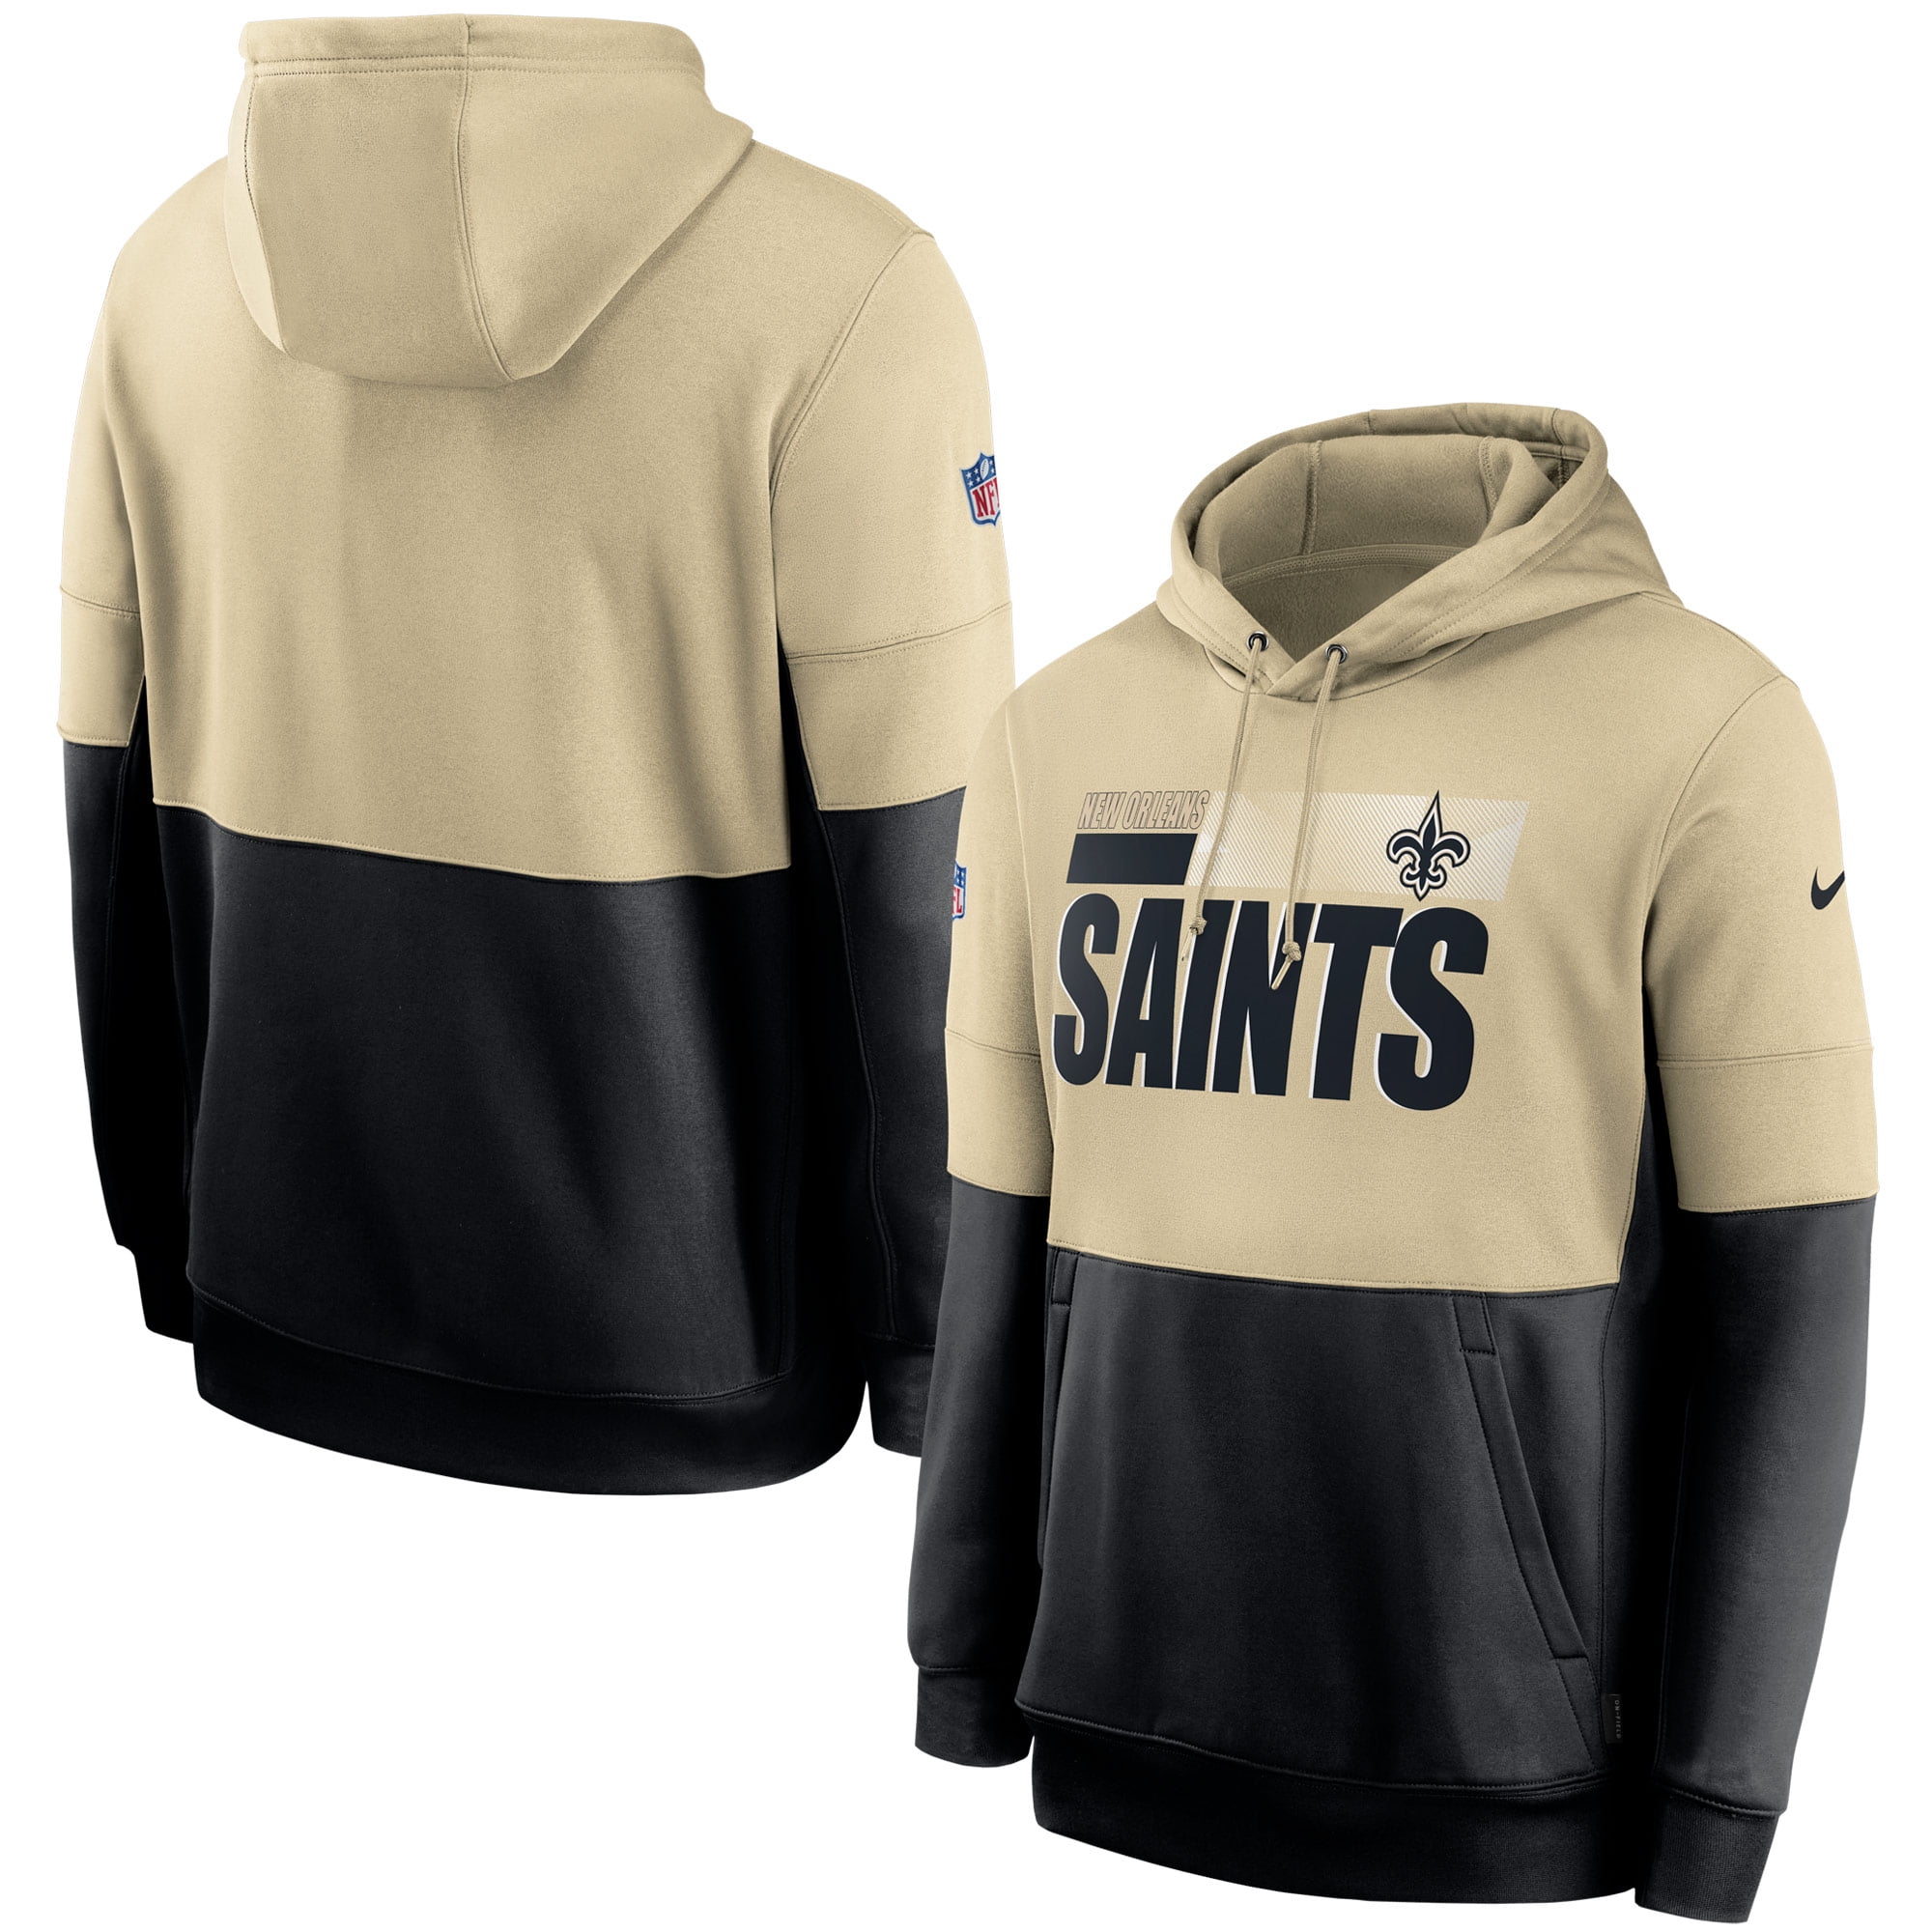 new orleans saints nike hoodie